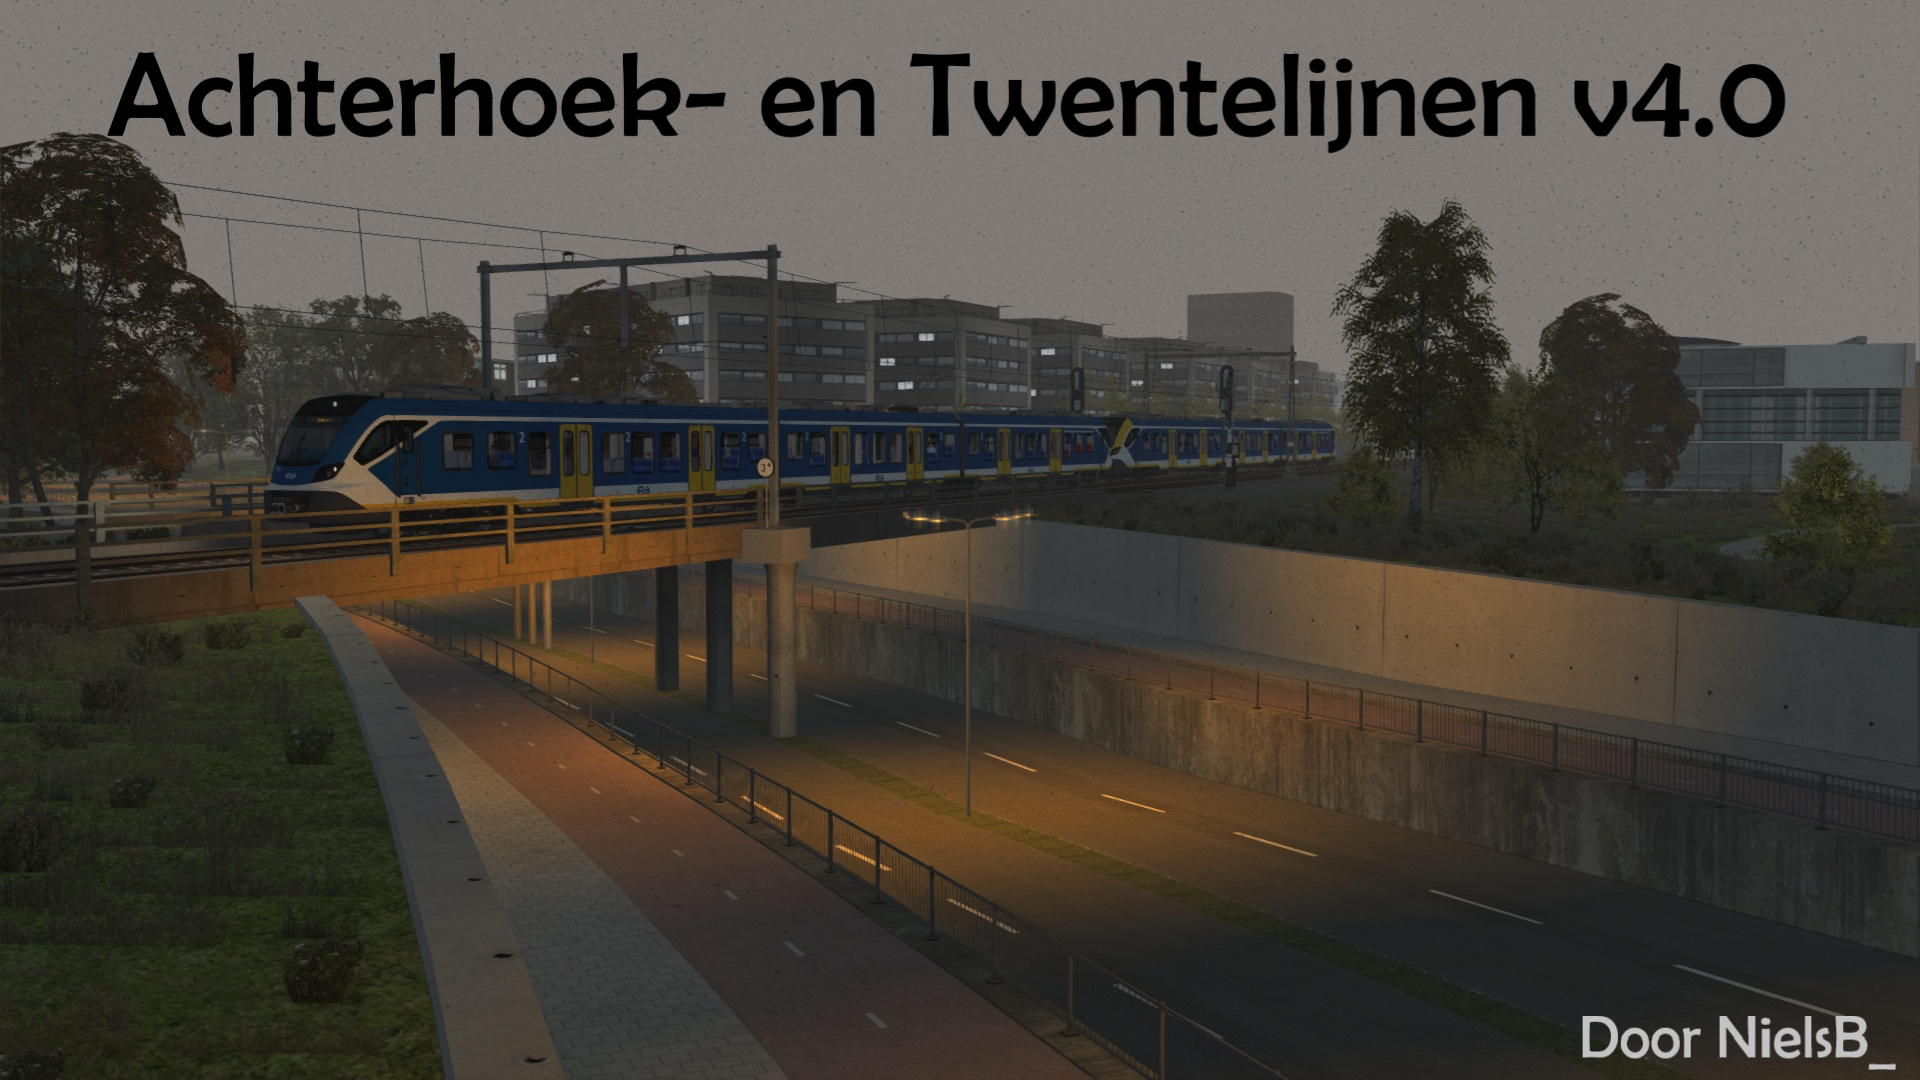 More information about "Achterhoek- en Twentelijnen"